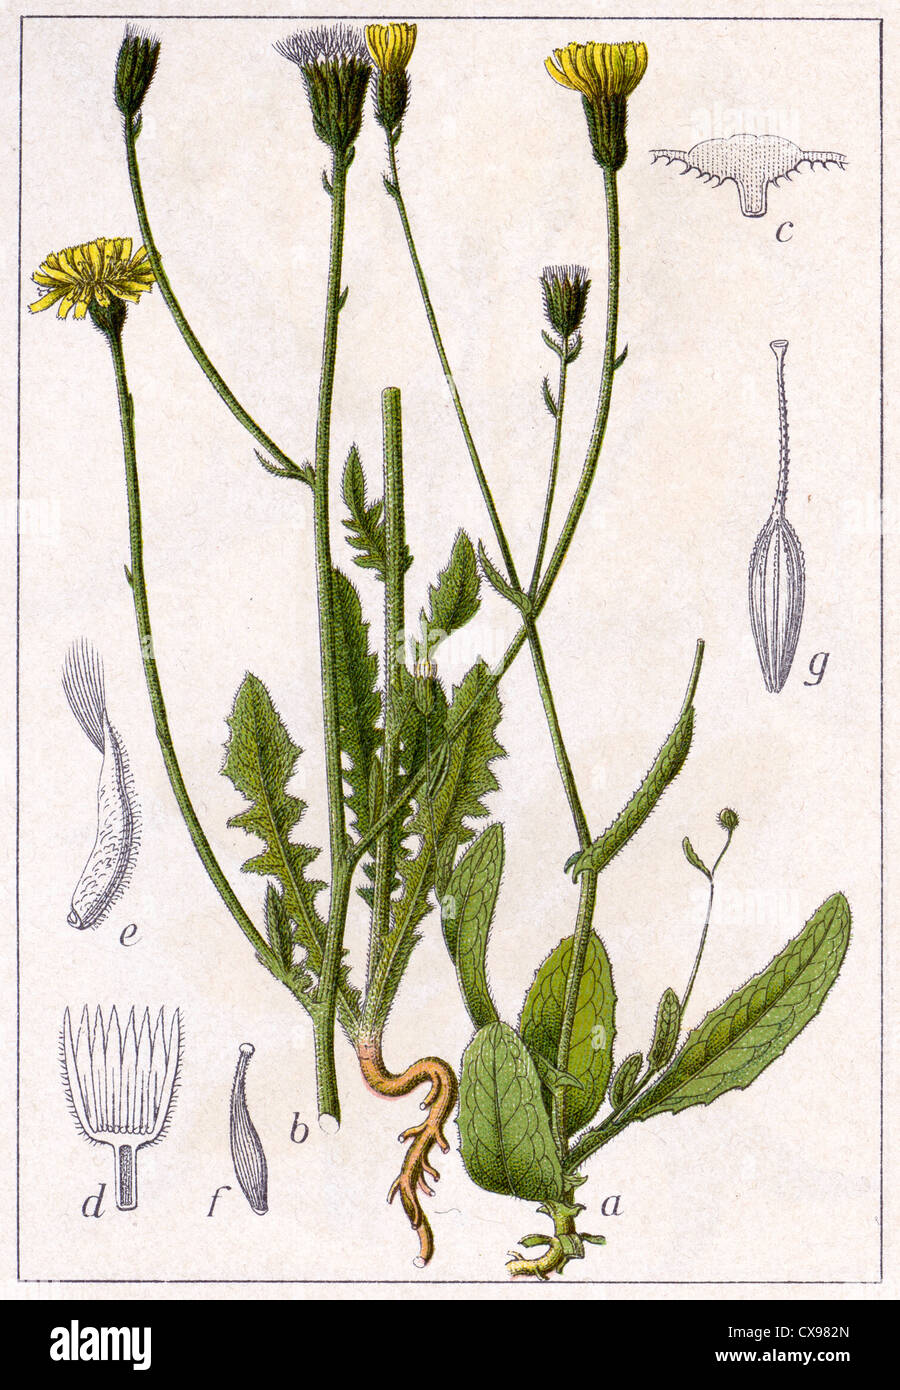 Crepis setosa - Crepis foetida Stock Photo